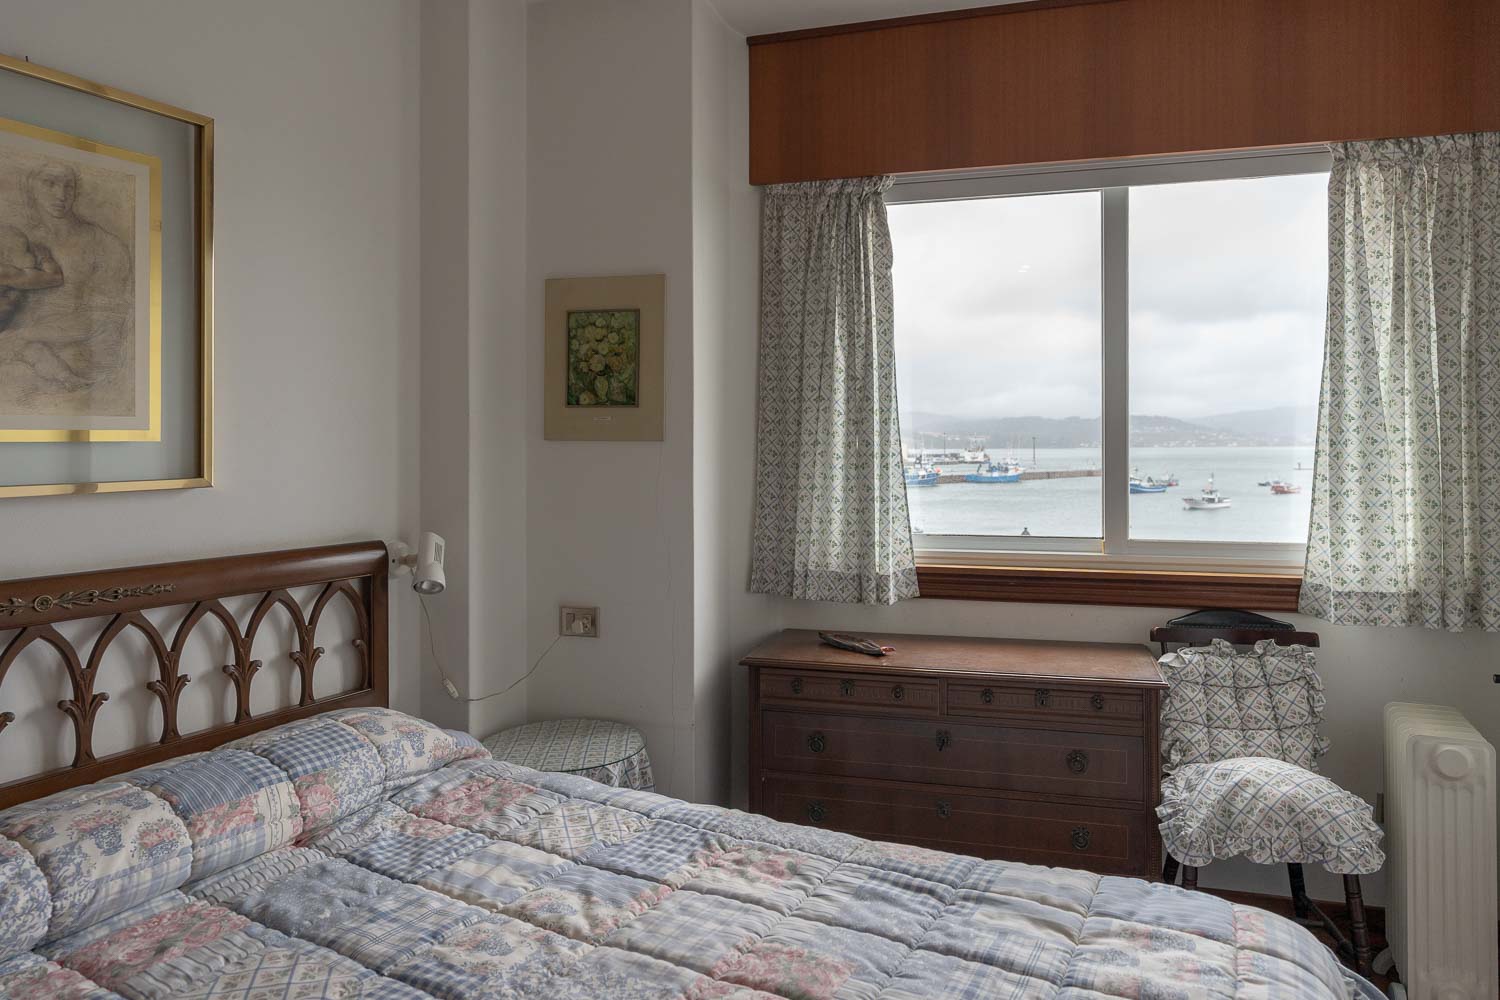 Dormitorio con vistas al mar ante de hacer home staging